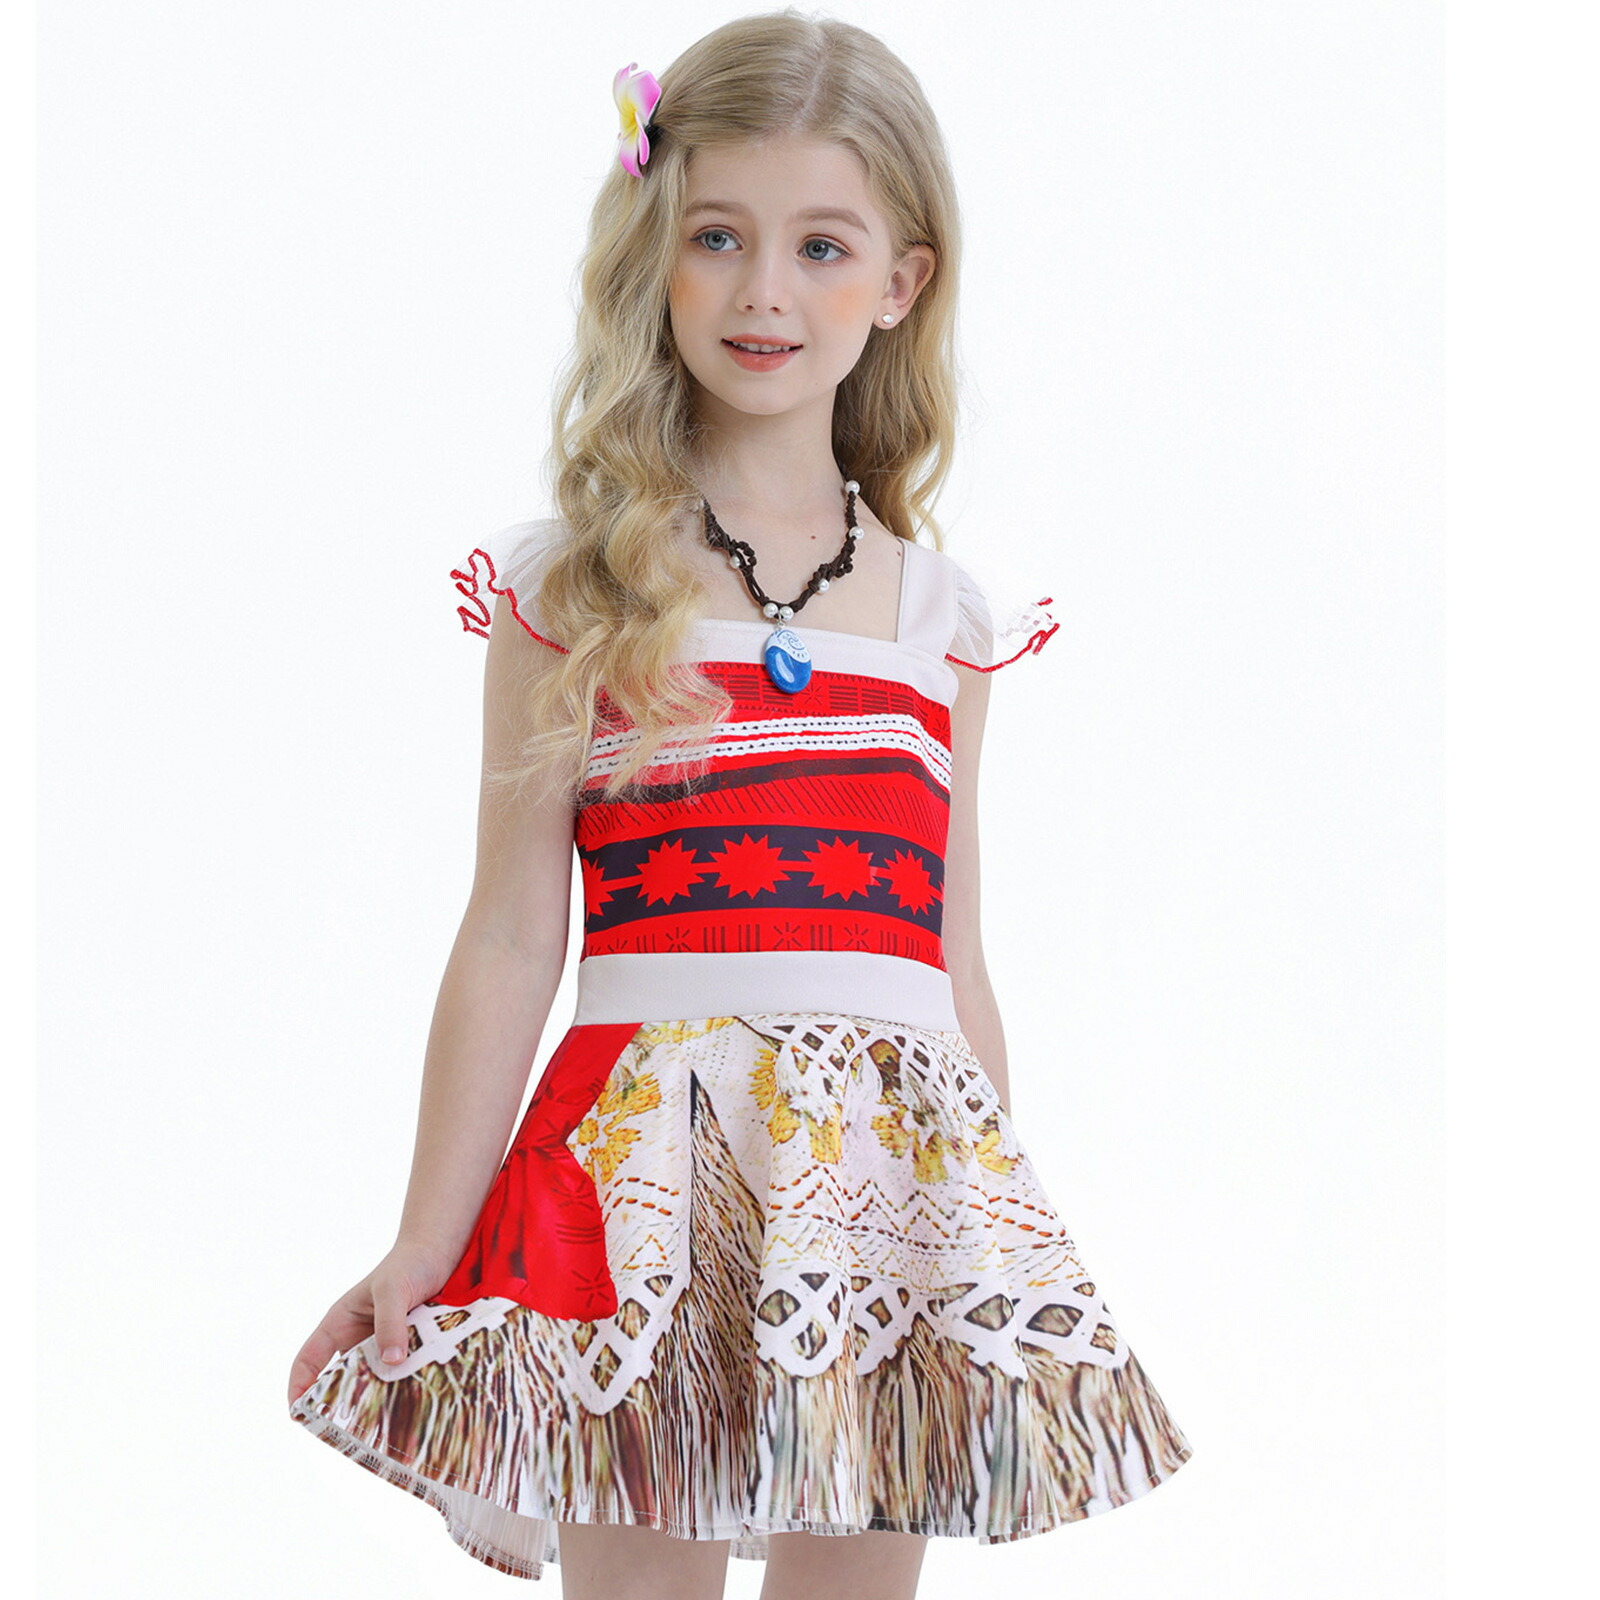 南国 ハワイ 民族衣装 04 コスチューム 子供 仮装 女の子 コスチューム ダンス 衣装 コスプレ プレゼント リトルプリンセス